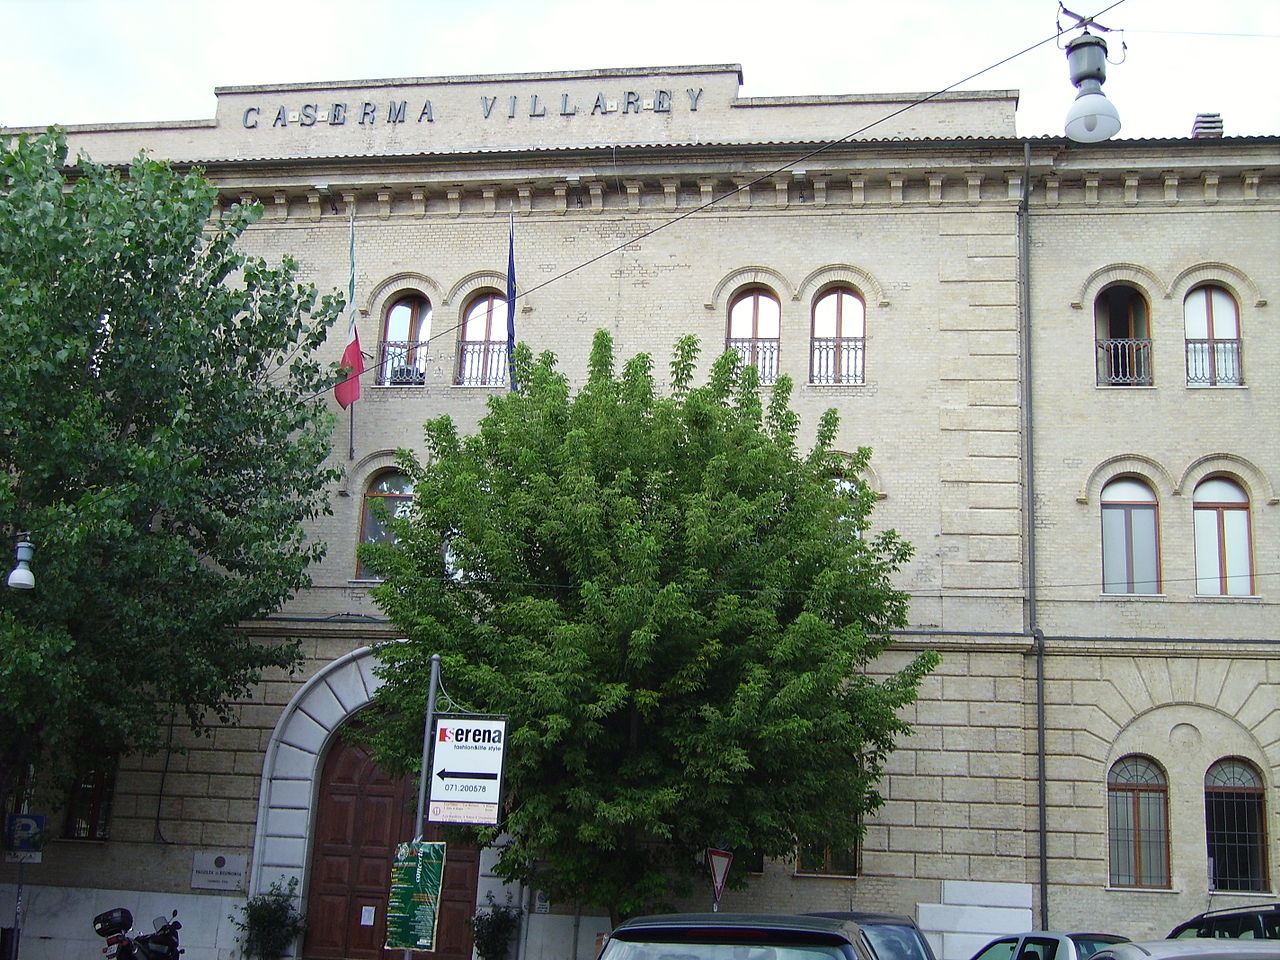 Università politecnica delle Marche (Ancona), facoltà di economia e commercio, palazzo caserma Villarey.